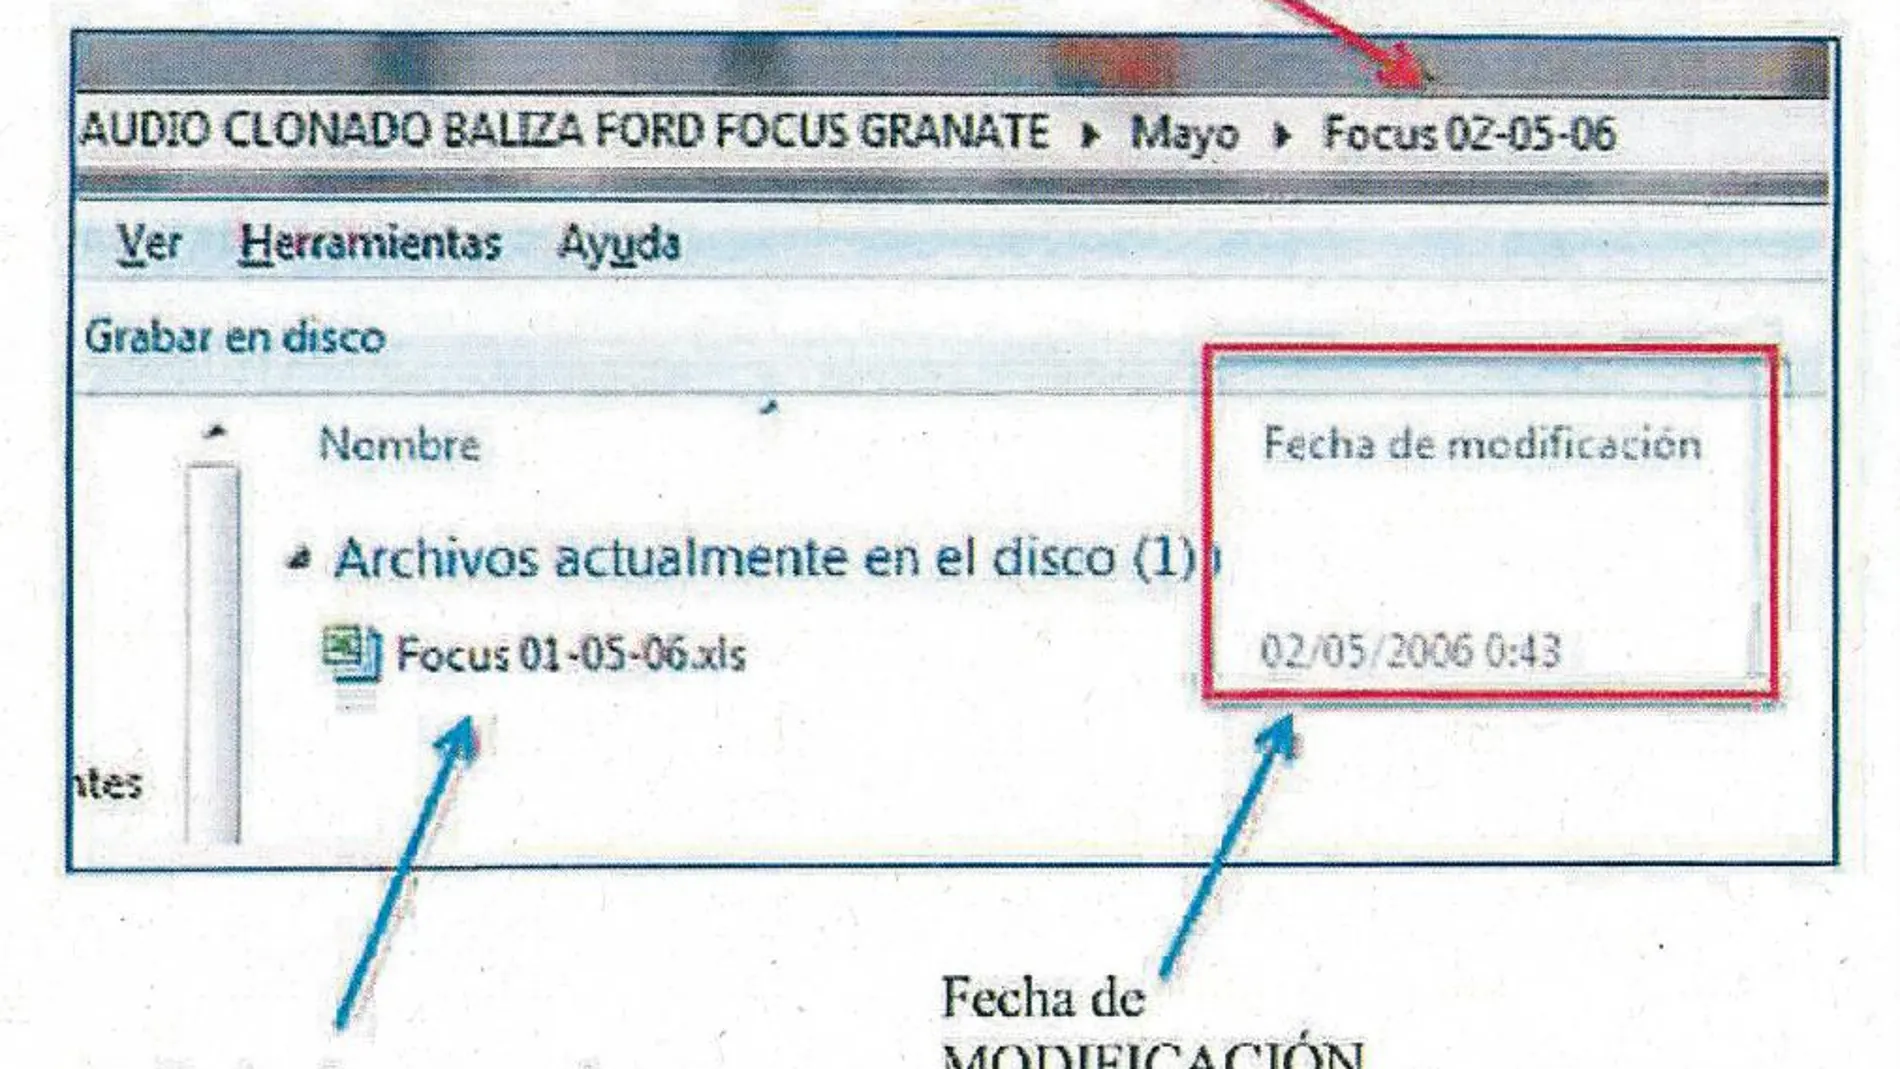 Al comprobar los datos de la radio baliza del 2 de mayo, los peritos descubren que el fichero en realidad lo que almecena son los datos del día1, es decir, que el fichero que contiene es el "focus 01-05-06.xls y el "focus 02-05-06.xls